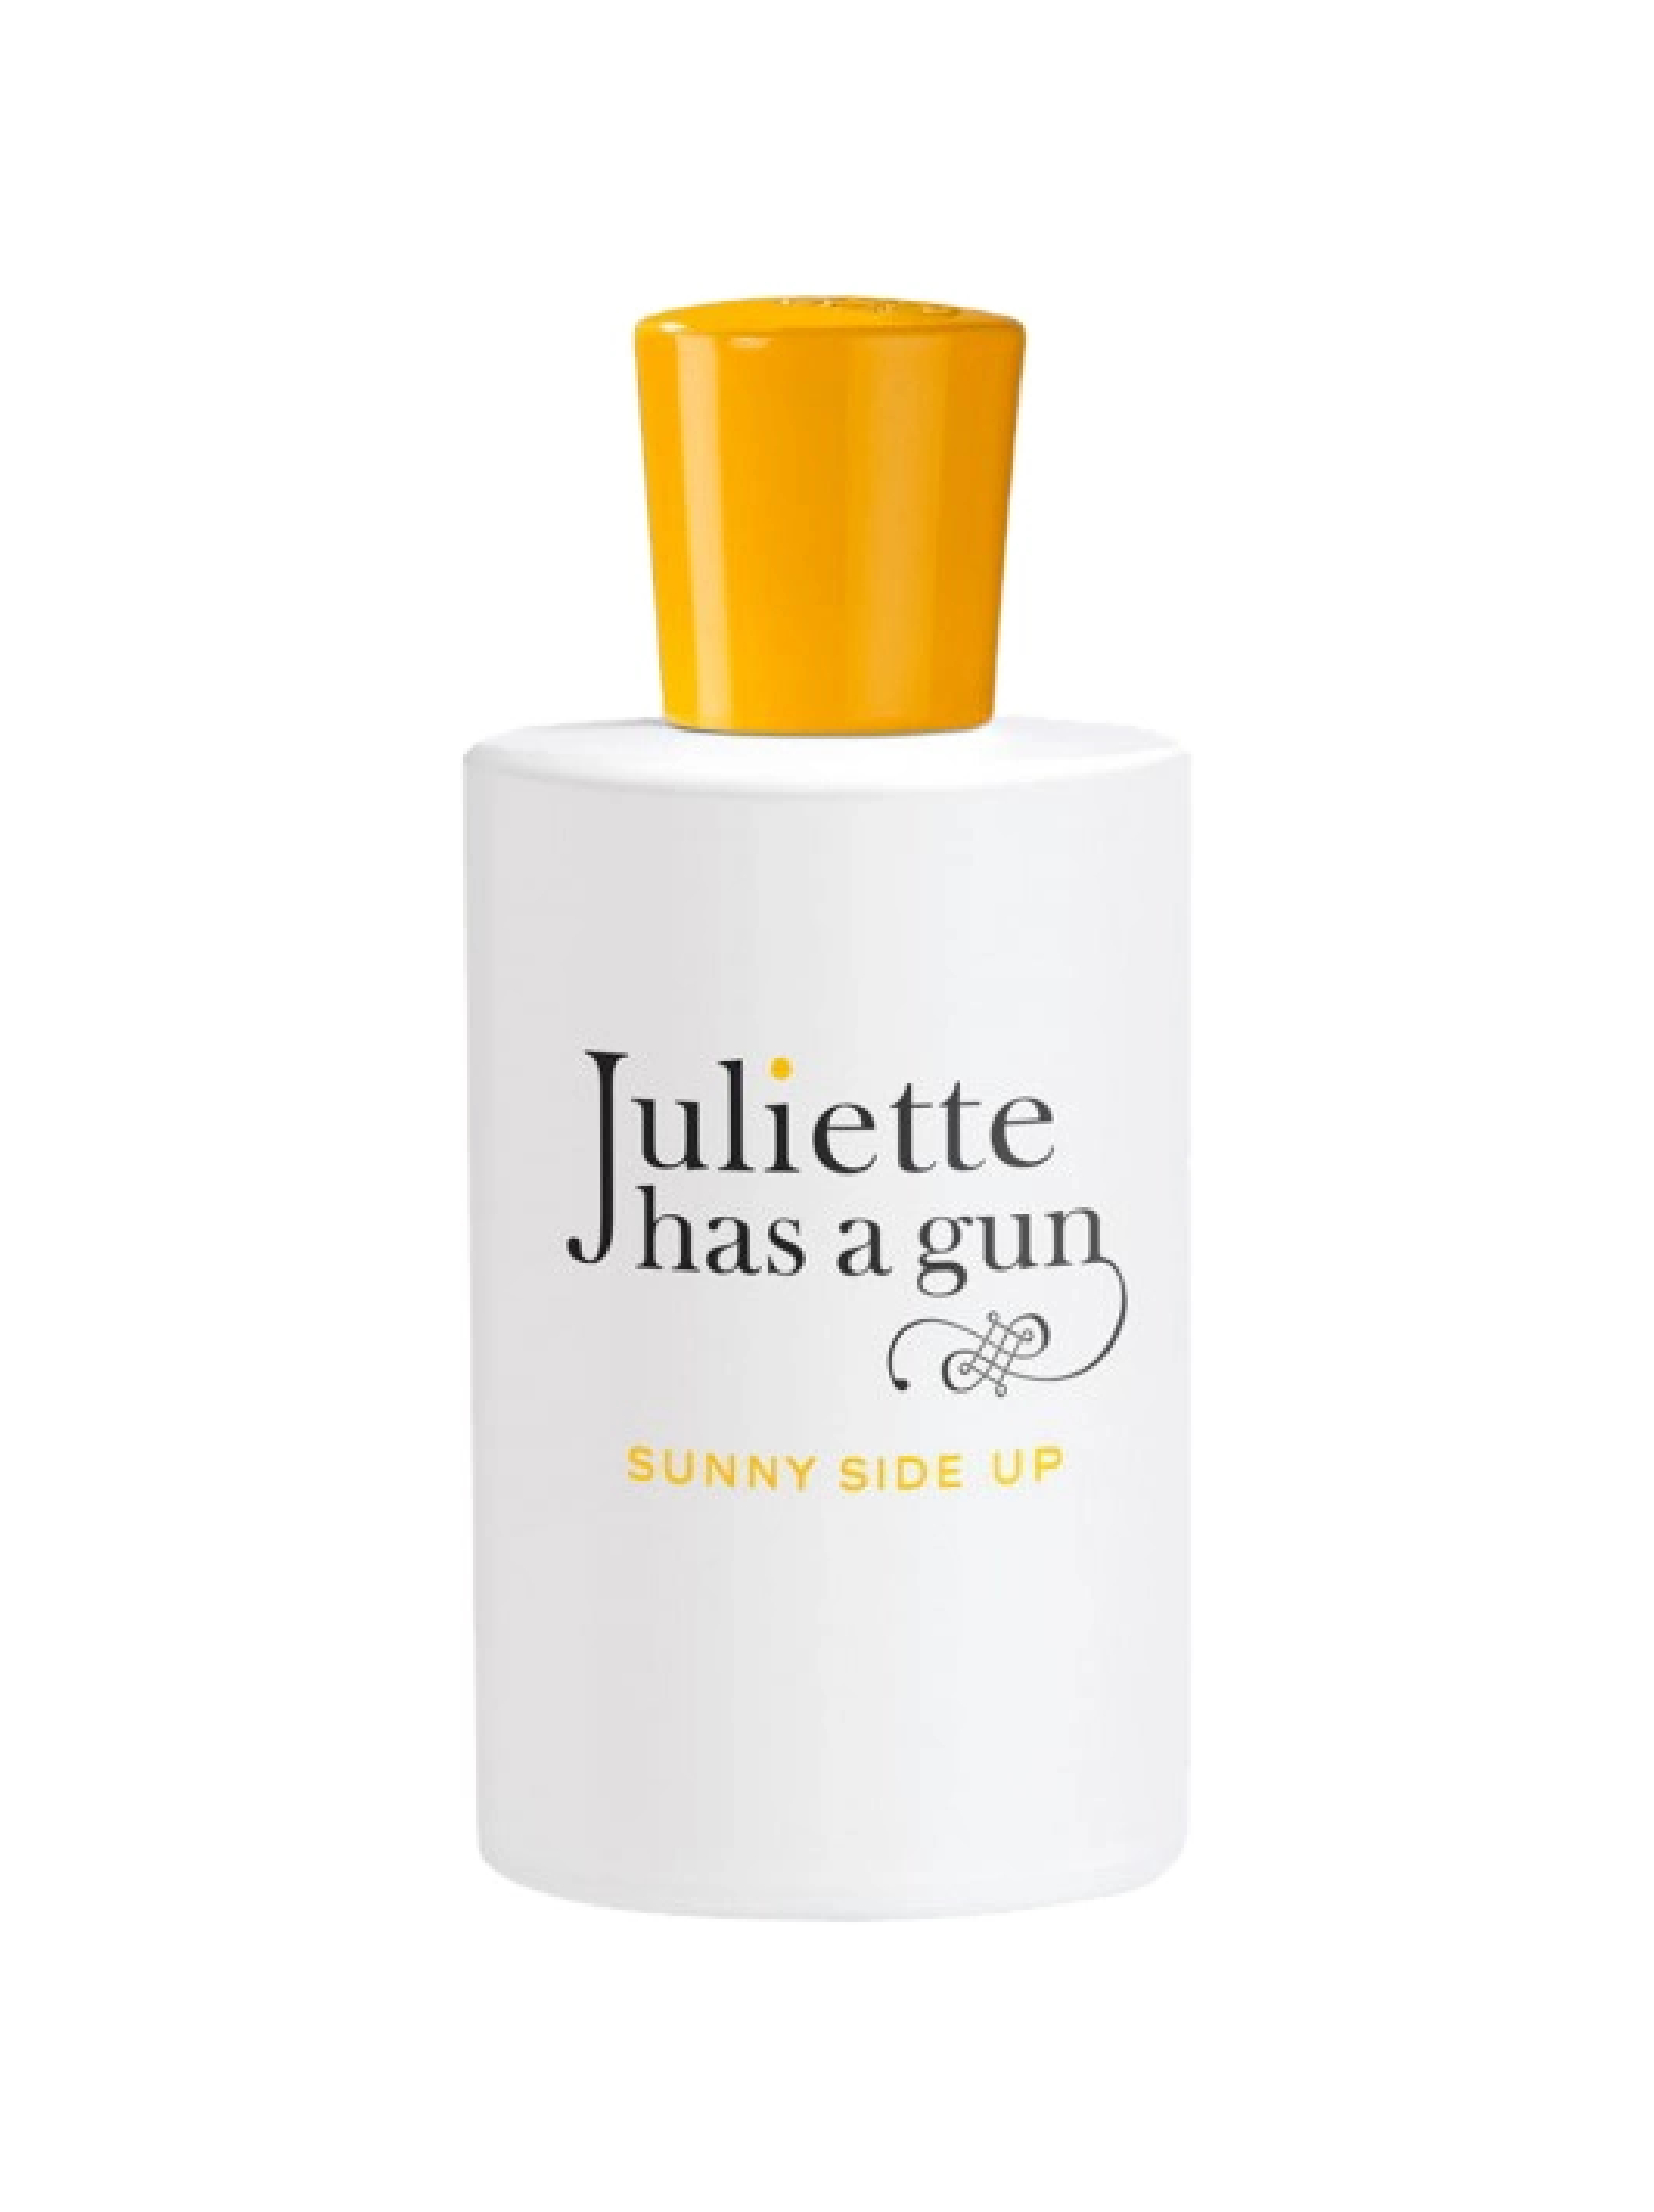 Джульет парфюм. Духи Juliette has a Gun. Juliette has a Gun Sunny Side up. Juliette has a Gun Sunny Side up тестер. Аромат Juliette has a Gun.